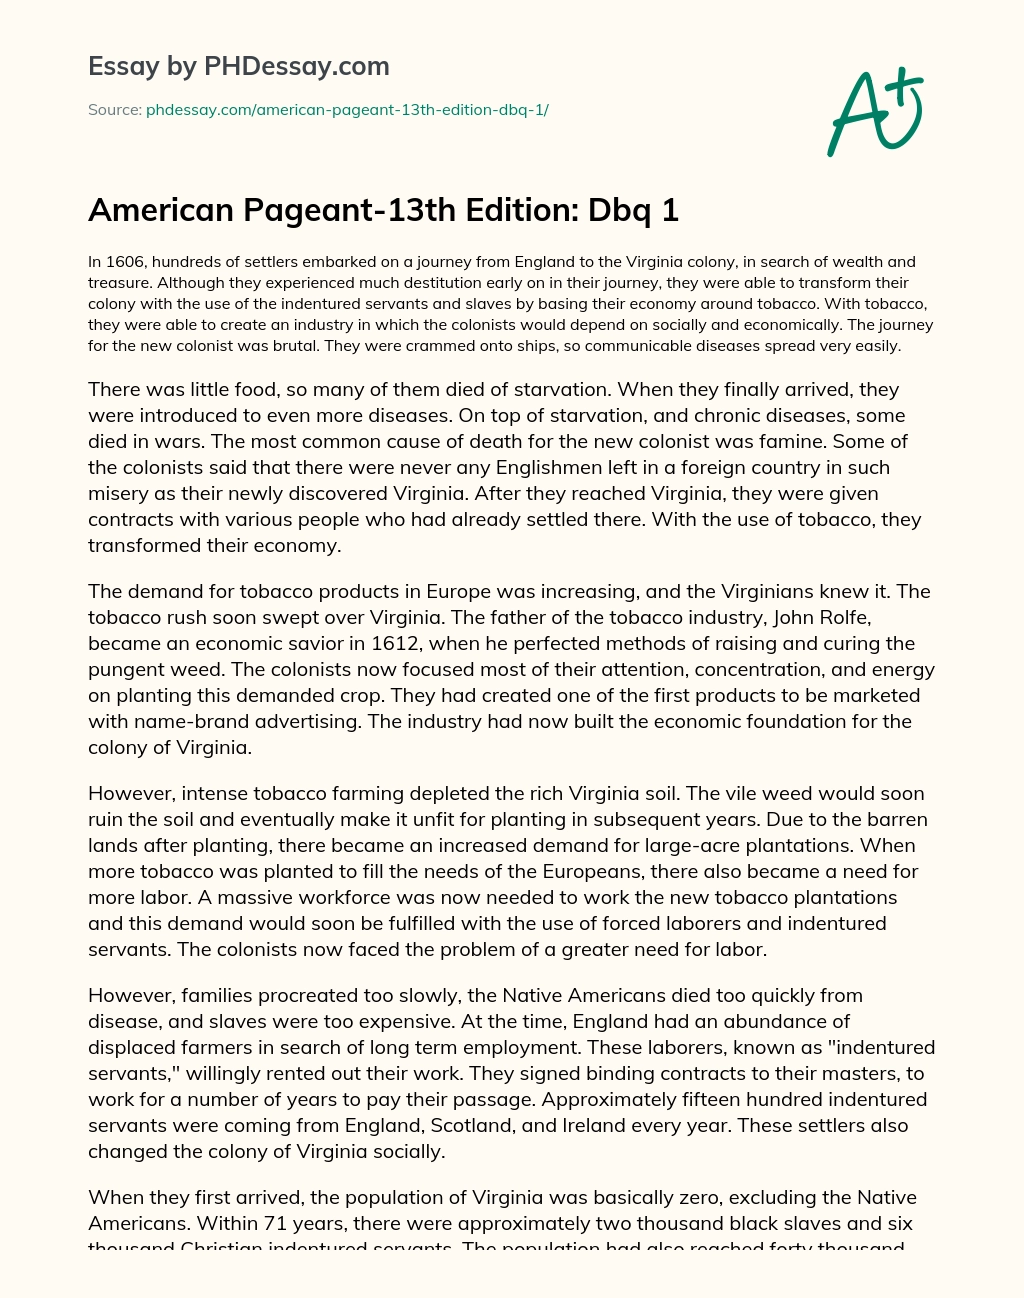 American Pageant-13th Edition: Dbq 1 essay